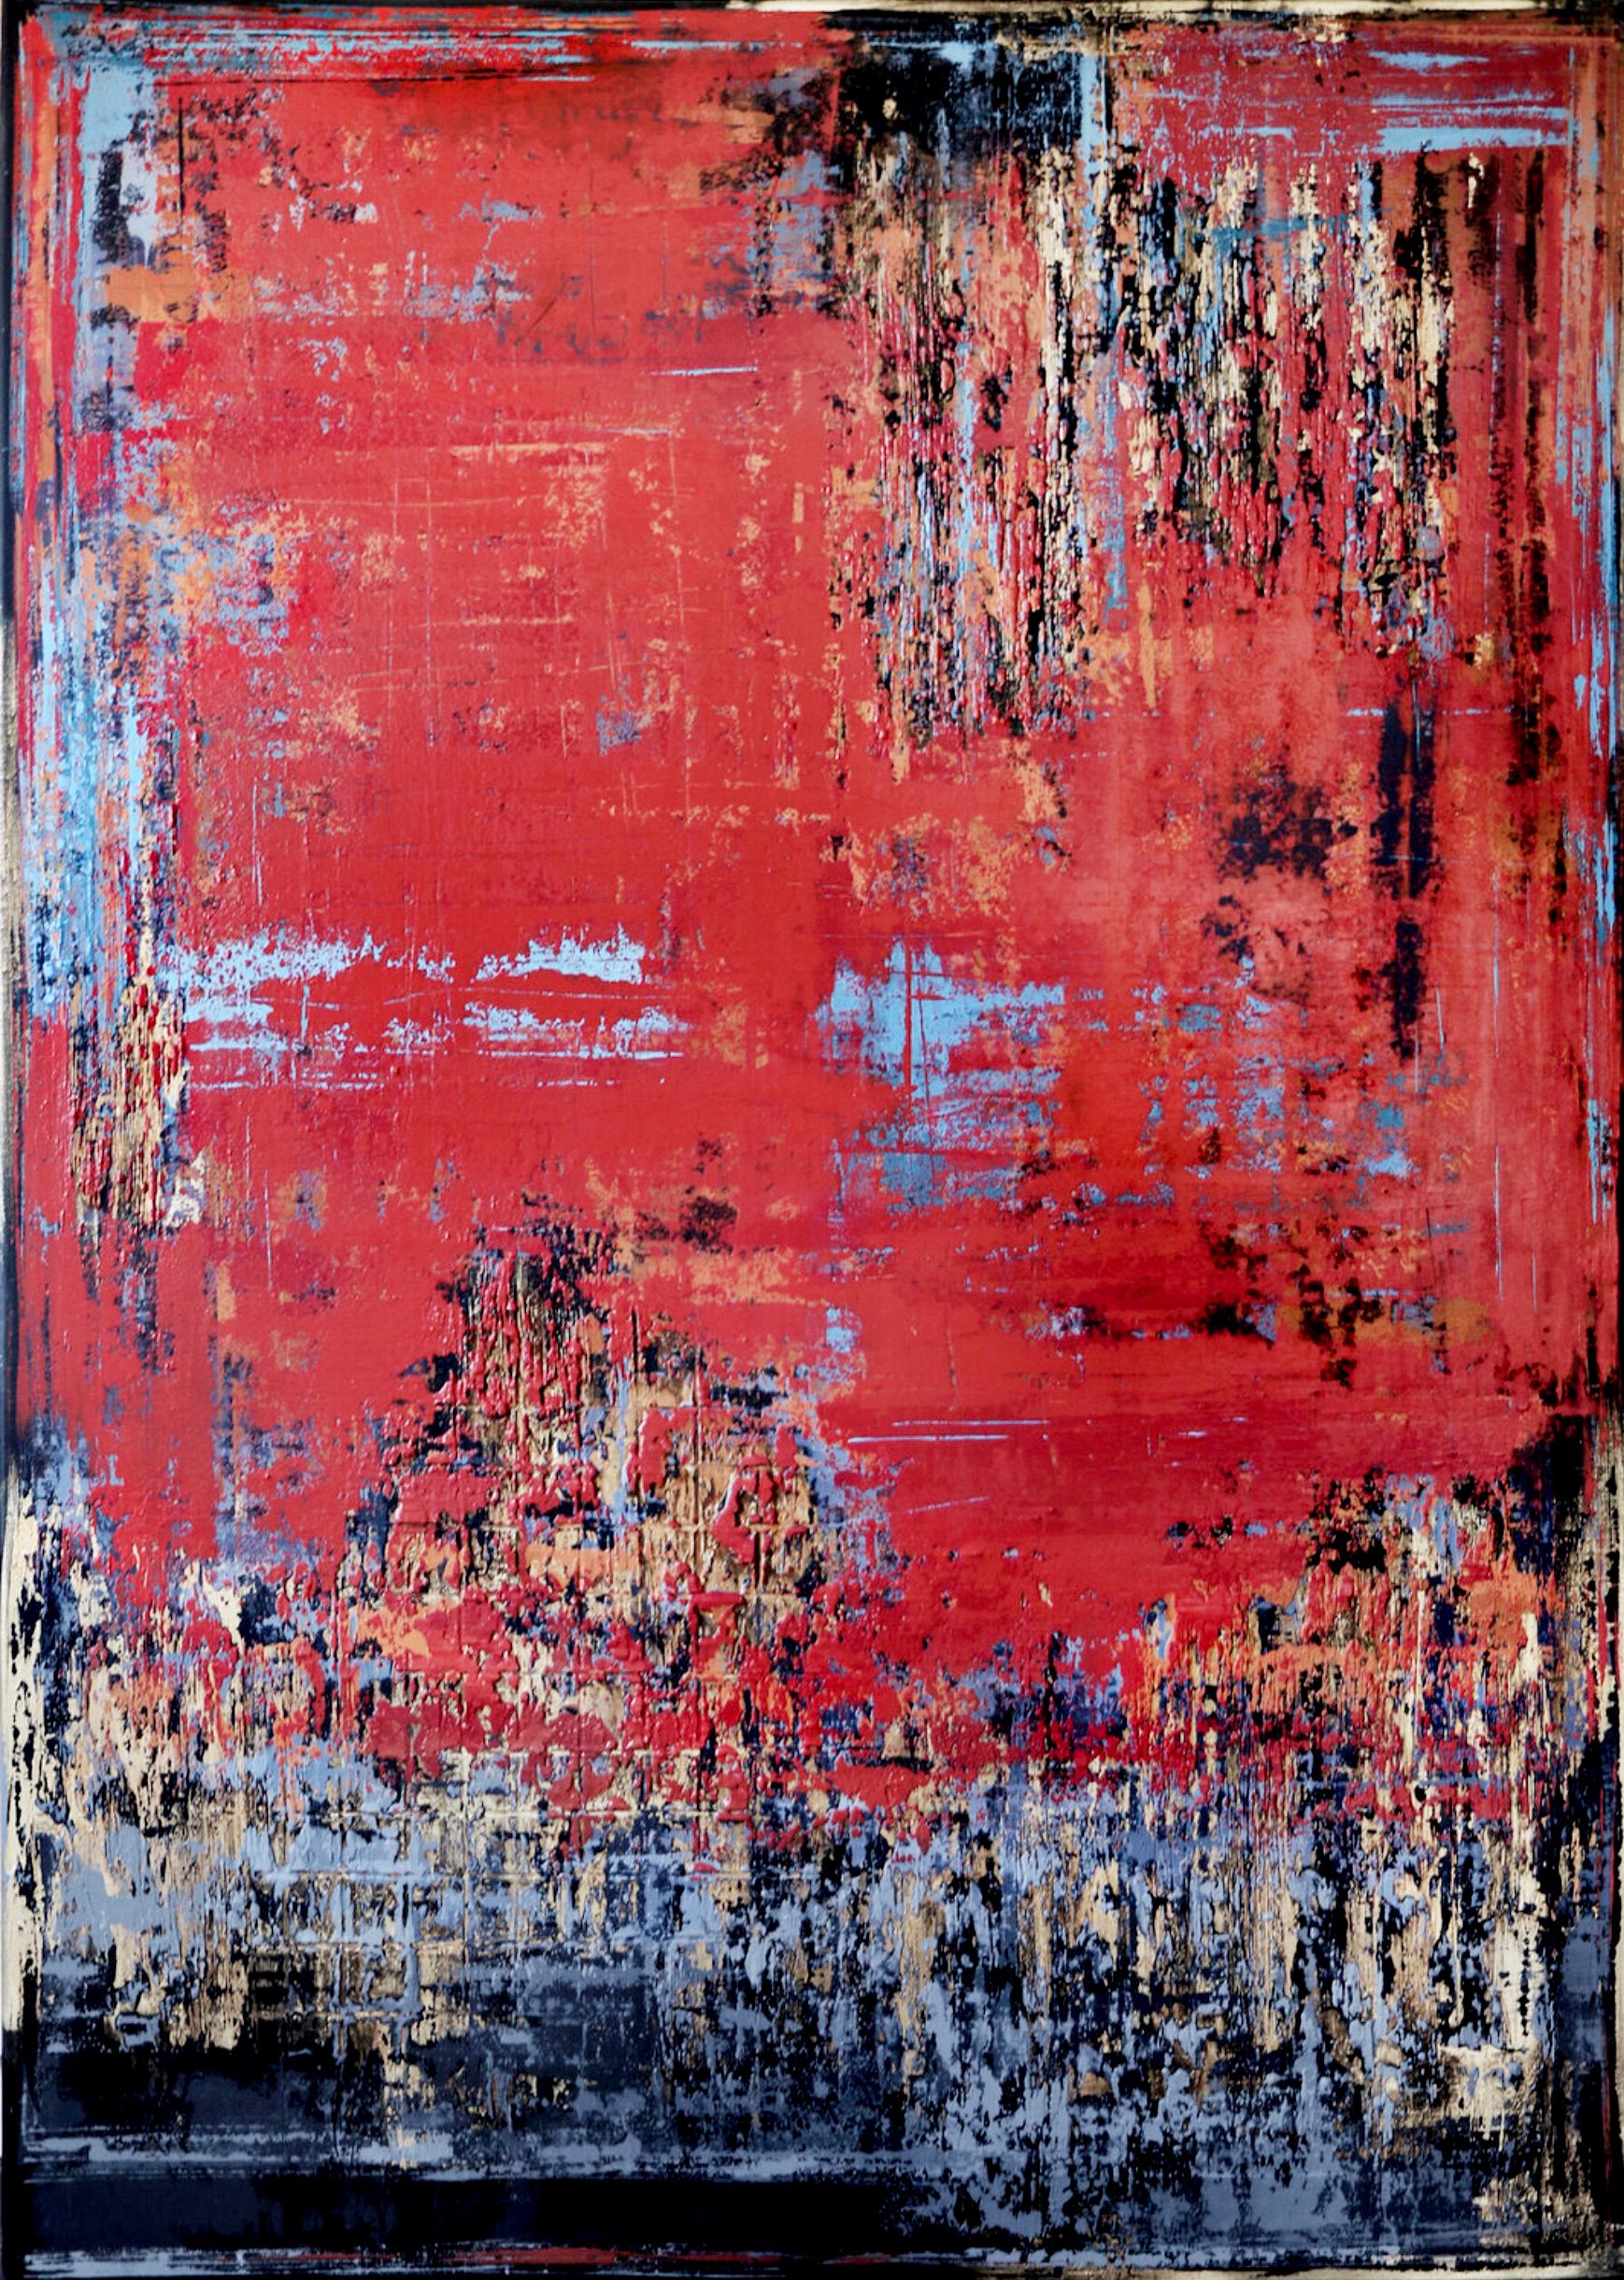 Nel dipinto espressionista e astratto "UNTOLD STORY" di Inez Froehlich dominano i colori rosso mattone/rosso industriale, grigio, oro, rame. Lo stile del dipinto è shabby chic, stile industriale, vintage, retrò, boho, rustico.